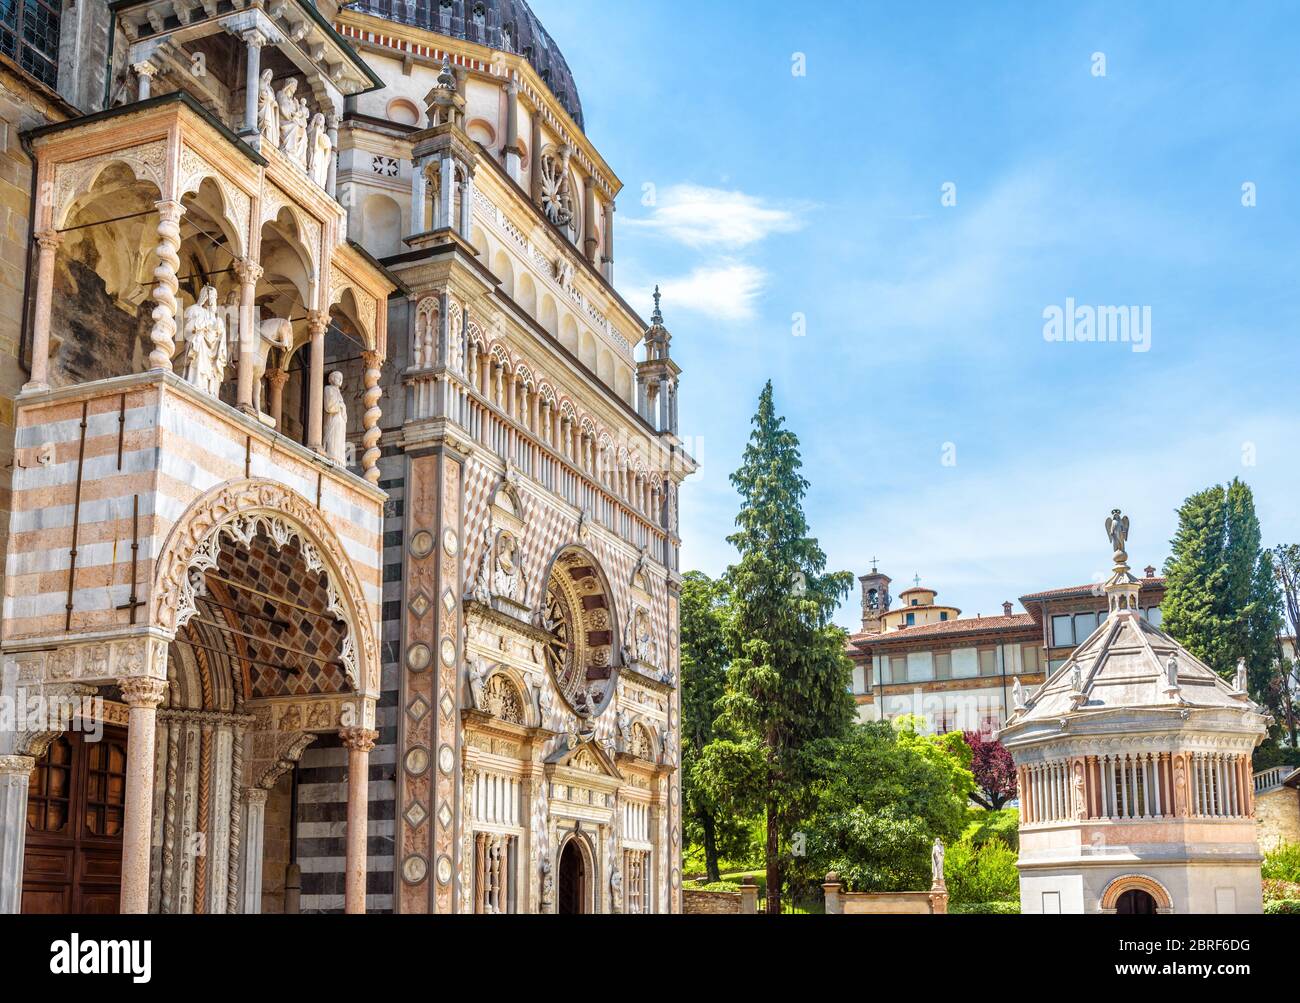 Basilica of Santa Maria Maggiore in Citta Alta of Bergamo, Italy. Ornate medieval church with luxury facade is a landmark of Bergamo. Historical archi Stock Photo